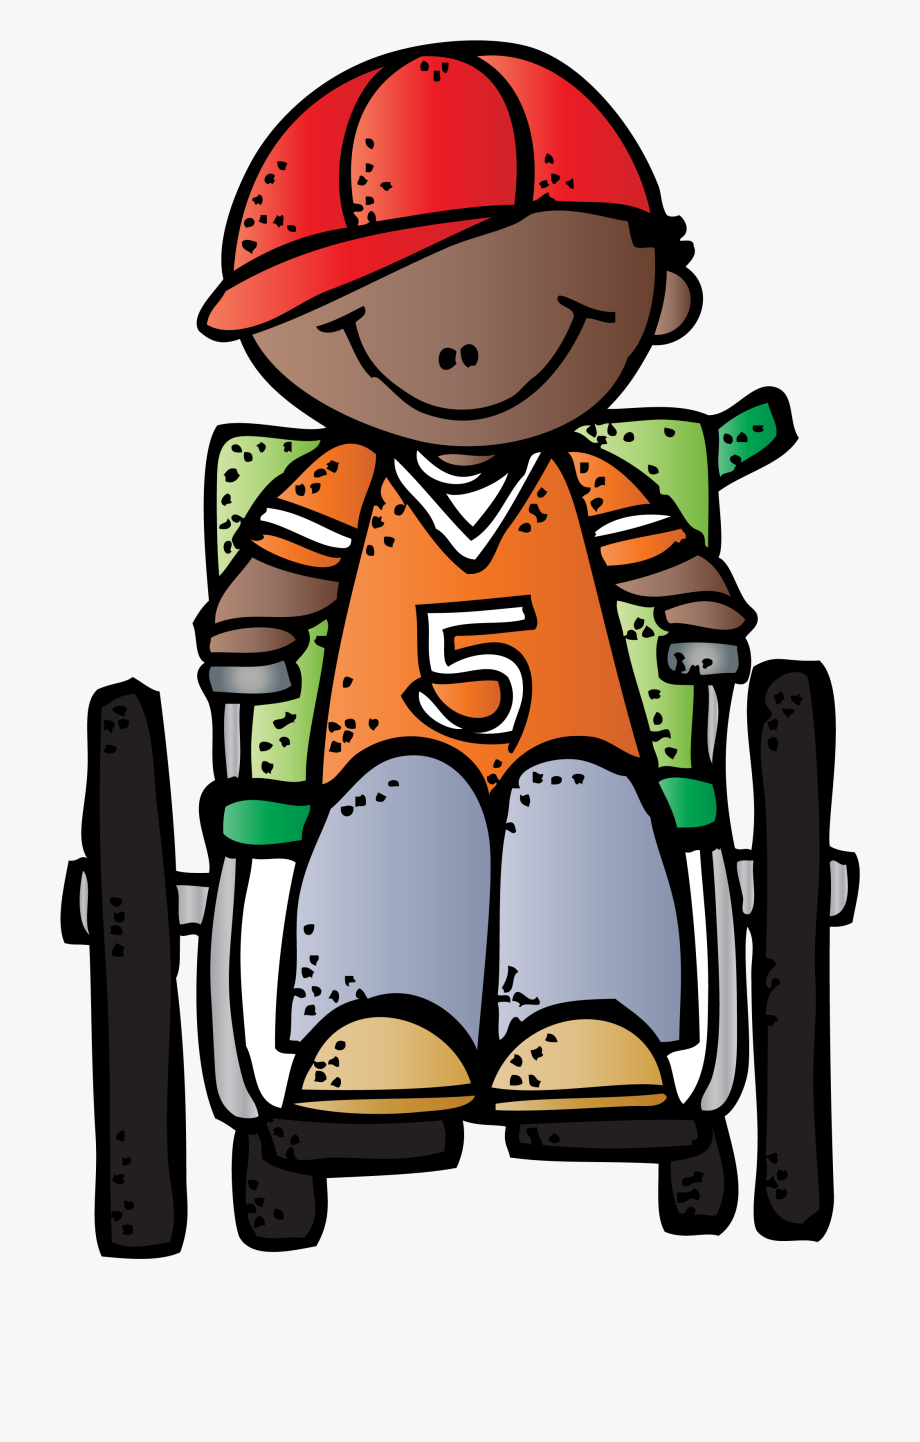 wheelchair clipart boy